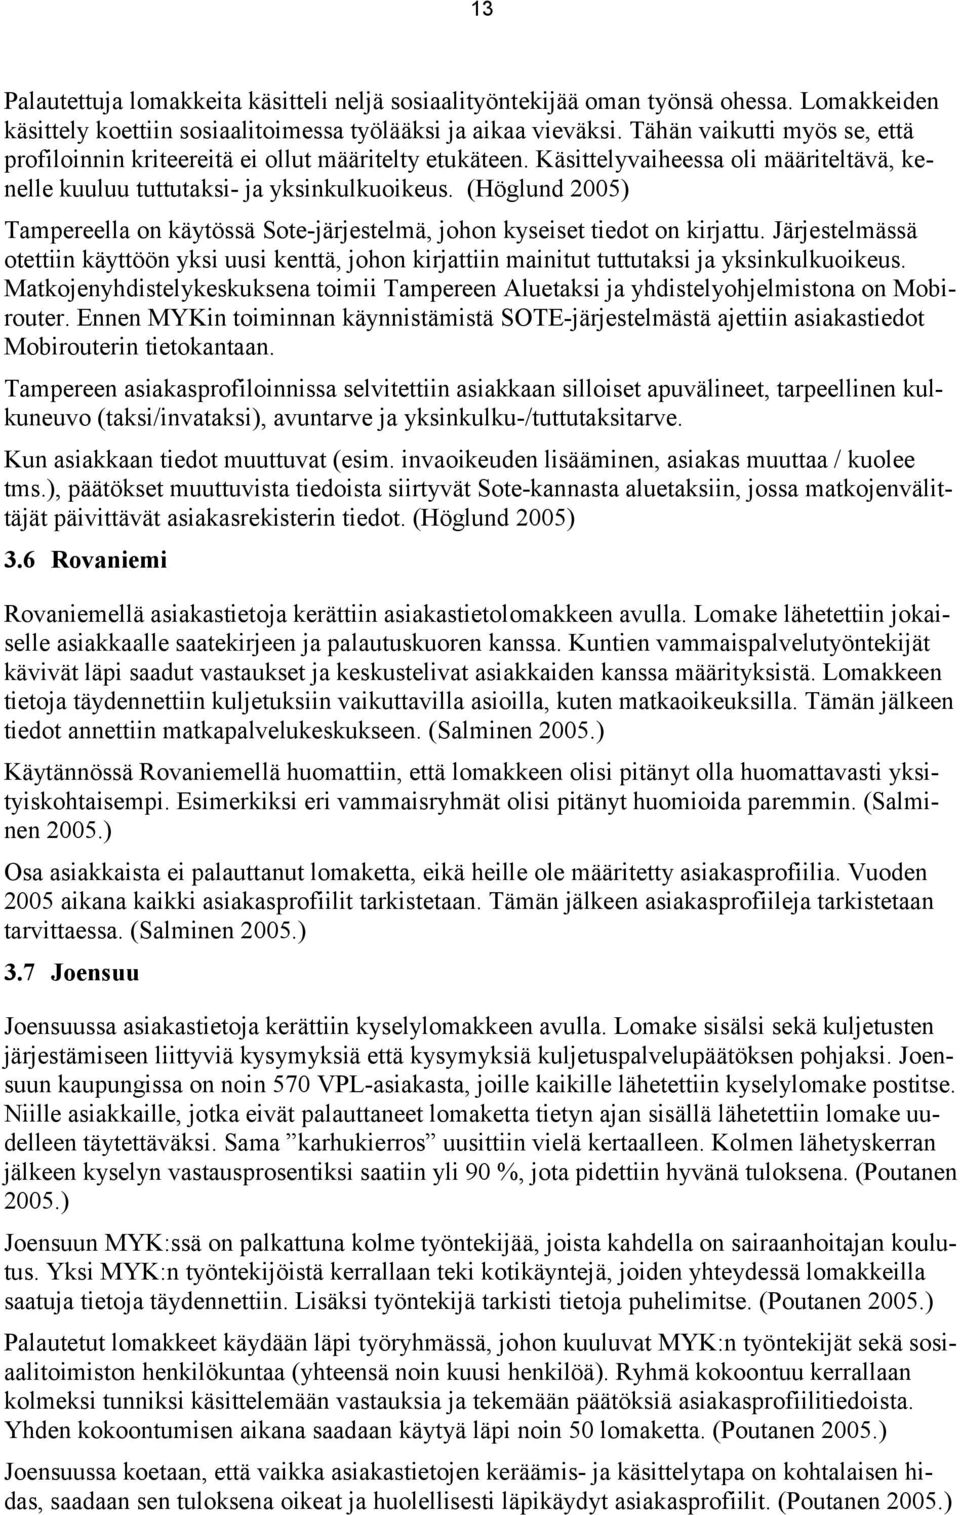 (Höglund 2005) Tampereella on käytössä Sote-järjestelmä, johon kyseiset tiedot on kirjattu. Järjestelmässä otettiin käyttöön yksi uusi kenttä, johon kirjattiin mainitut tuttutaksi ja yksinkulkuoikeus.